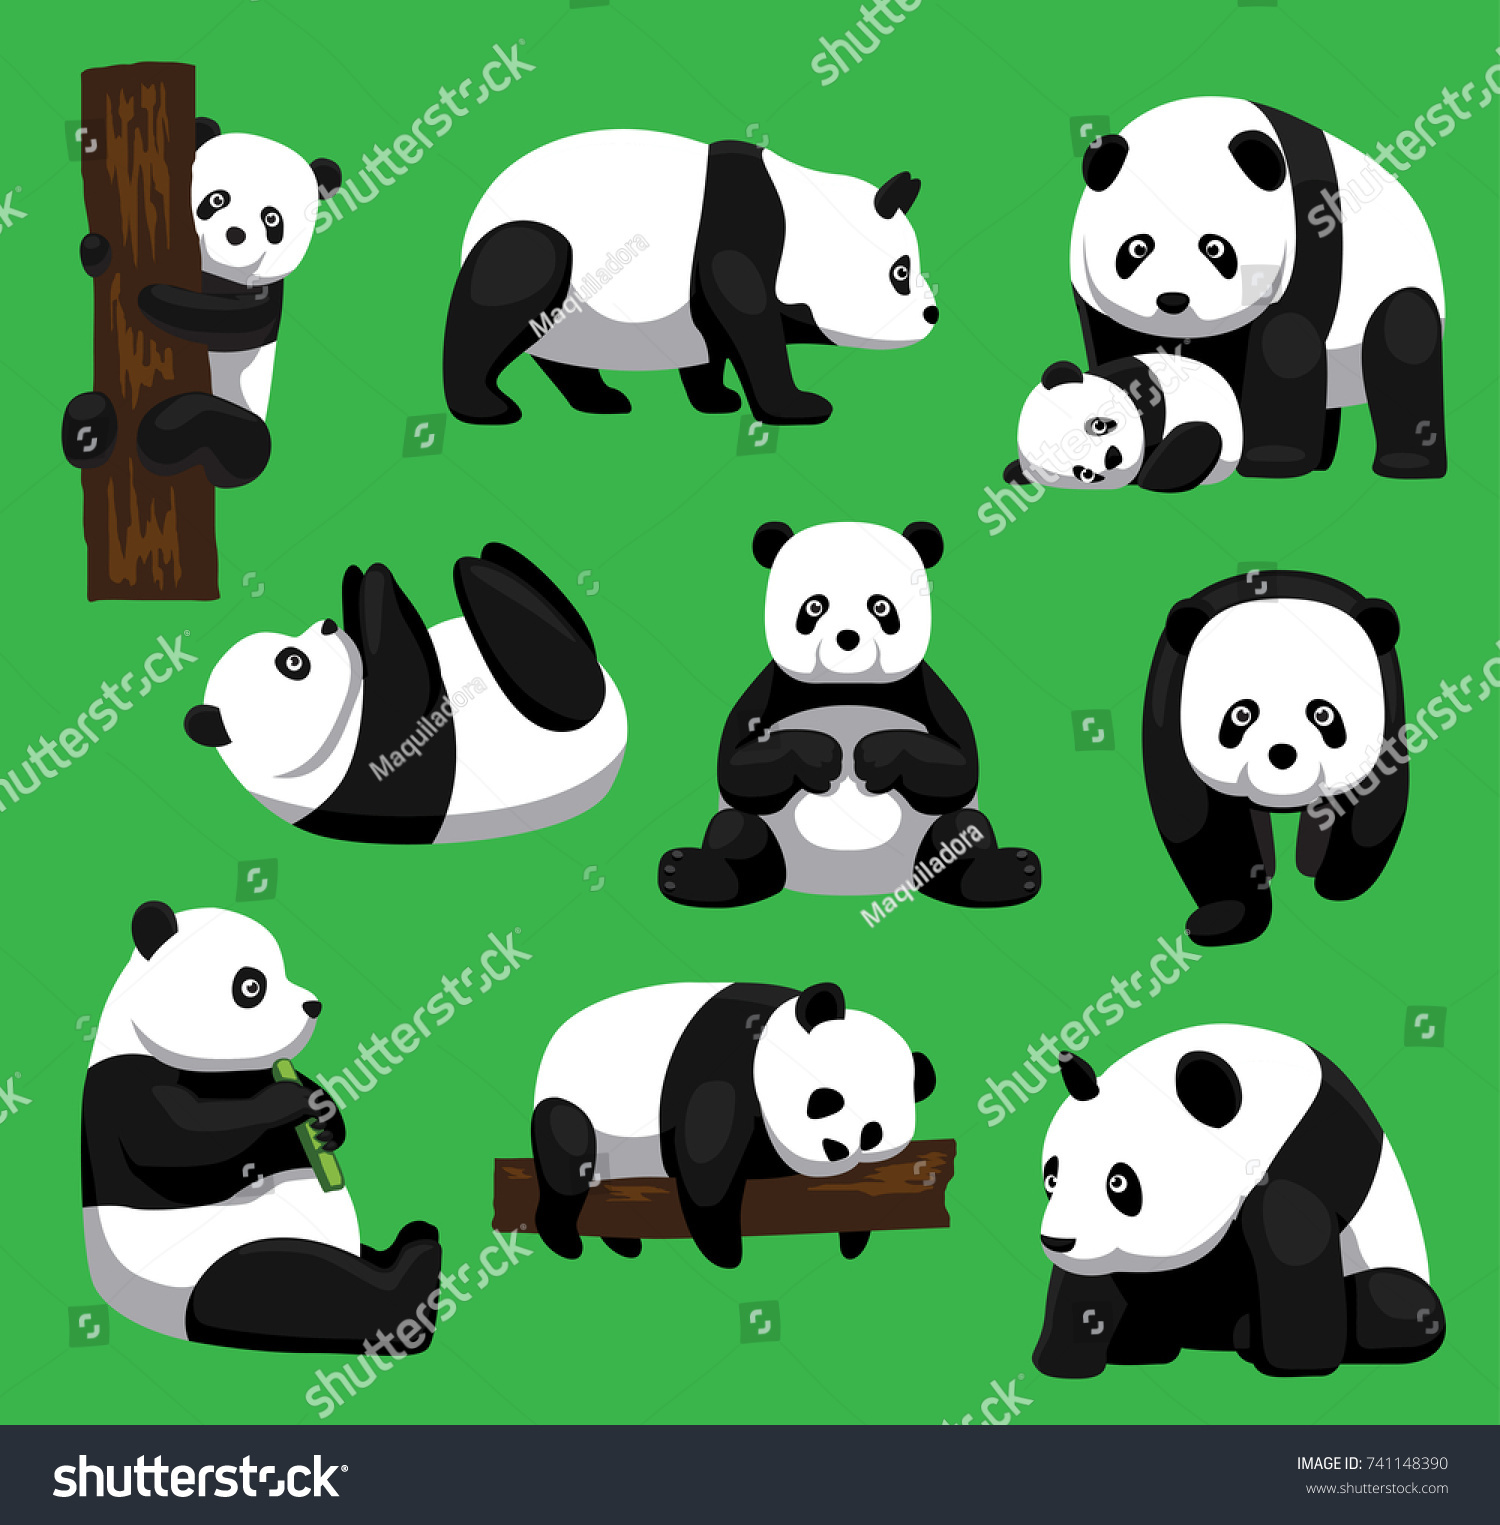 SVG of Panda Bear Nine Poses Cartoon Vector Illustration svg